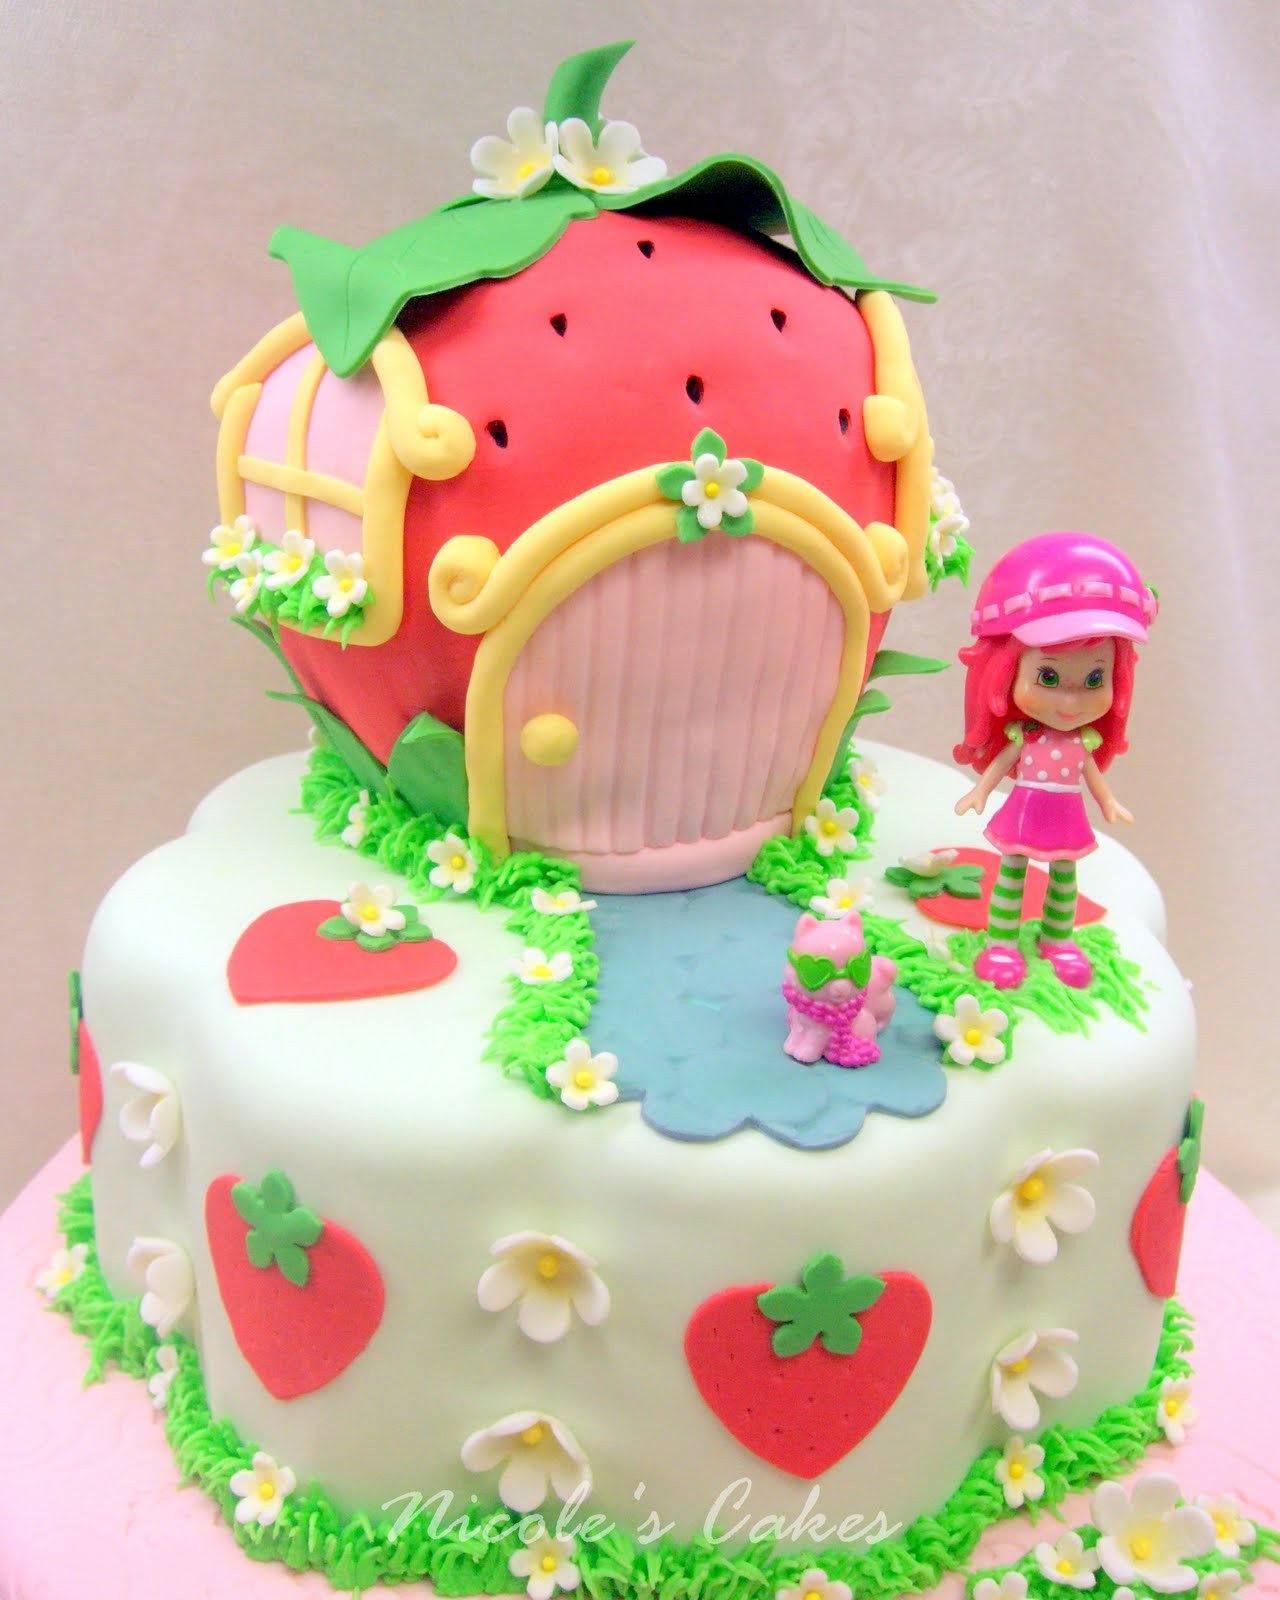 Strawberry Shortcake Birthday Cake Recipes
 Birthday Cakes A Berry Beautiful Strawberry Shortcake